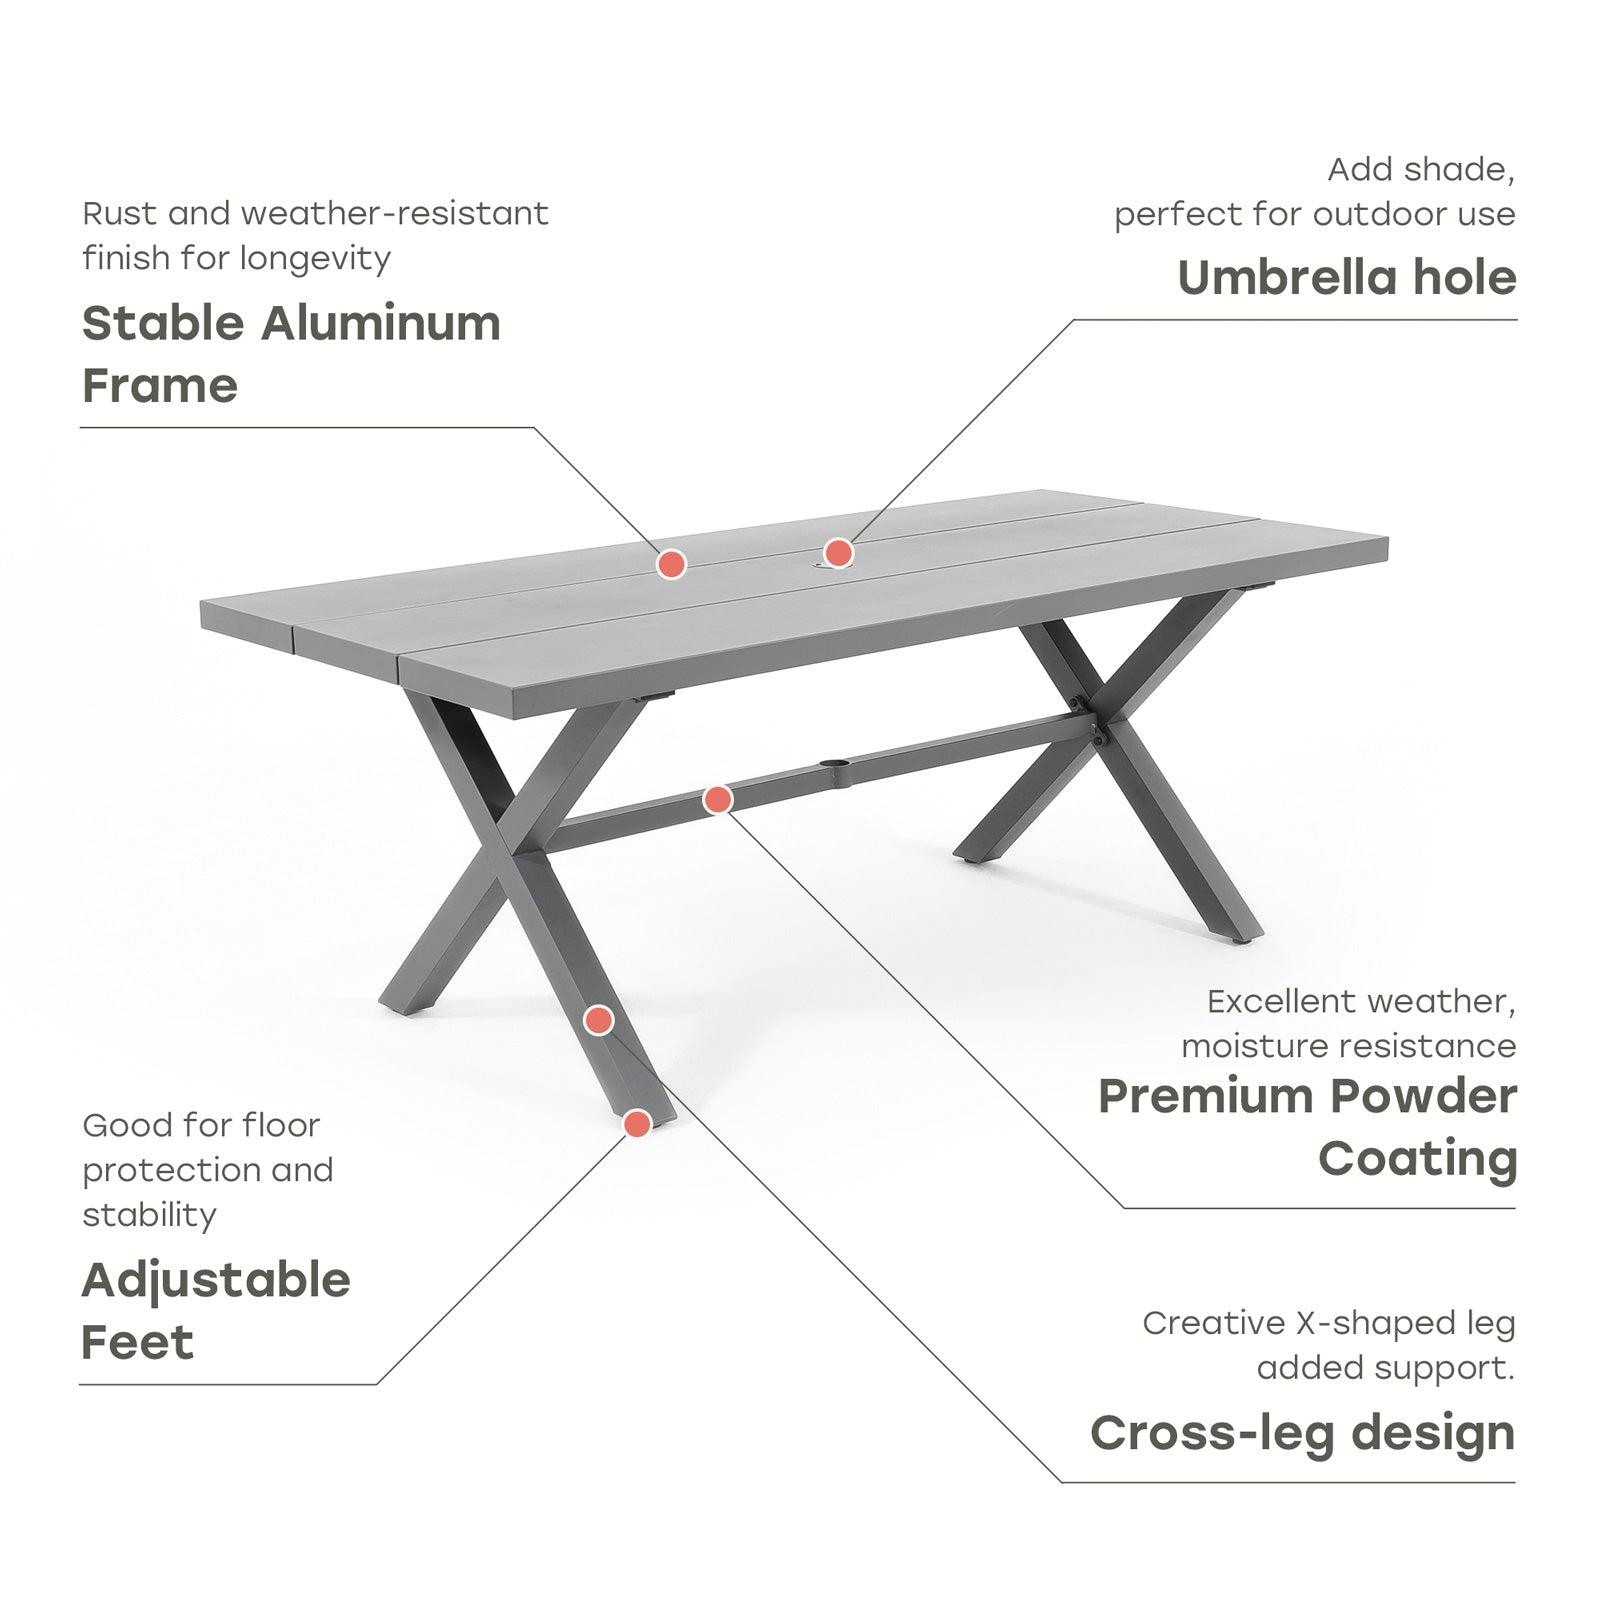 Salina Modern Aluminum Outdoor Dining Table for 8 with Umbrella Hole, Grey Aluminum Frame, Rectangular Shape, X-Shaped Leg Design - Jardina #color_Dark Grey